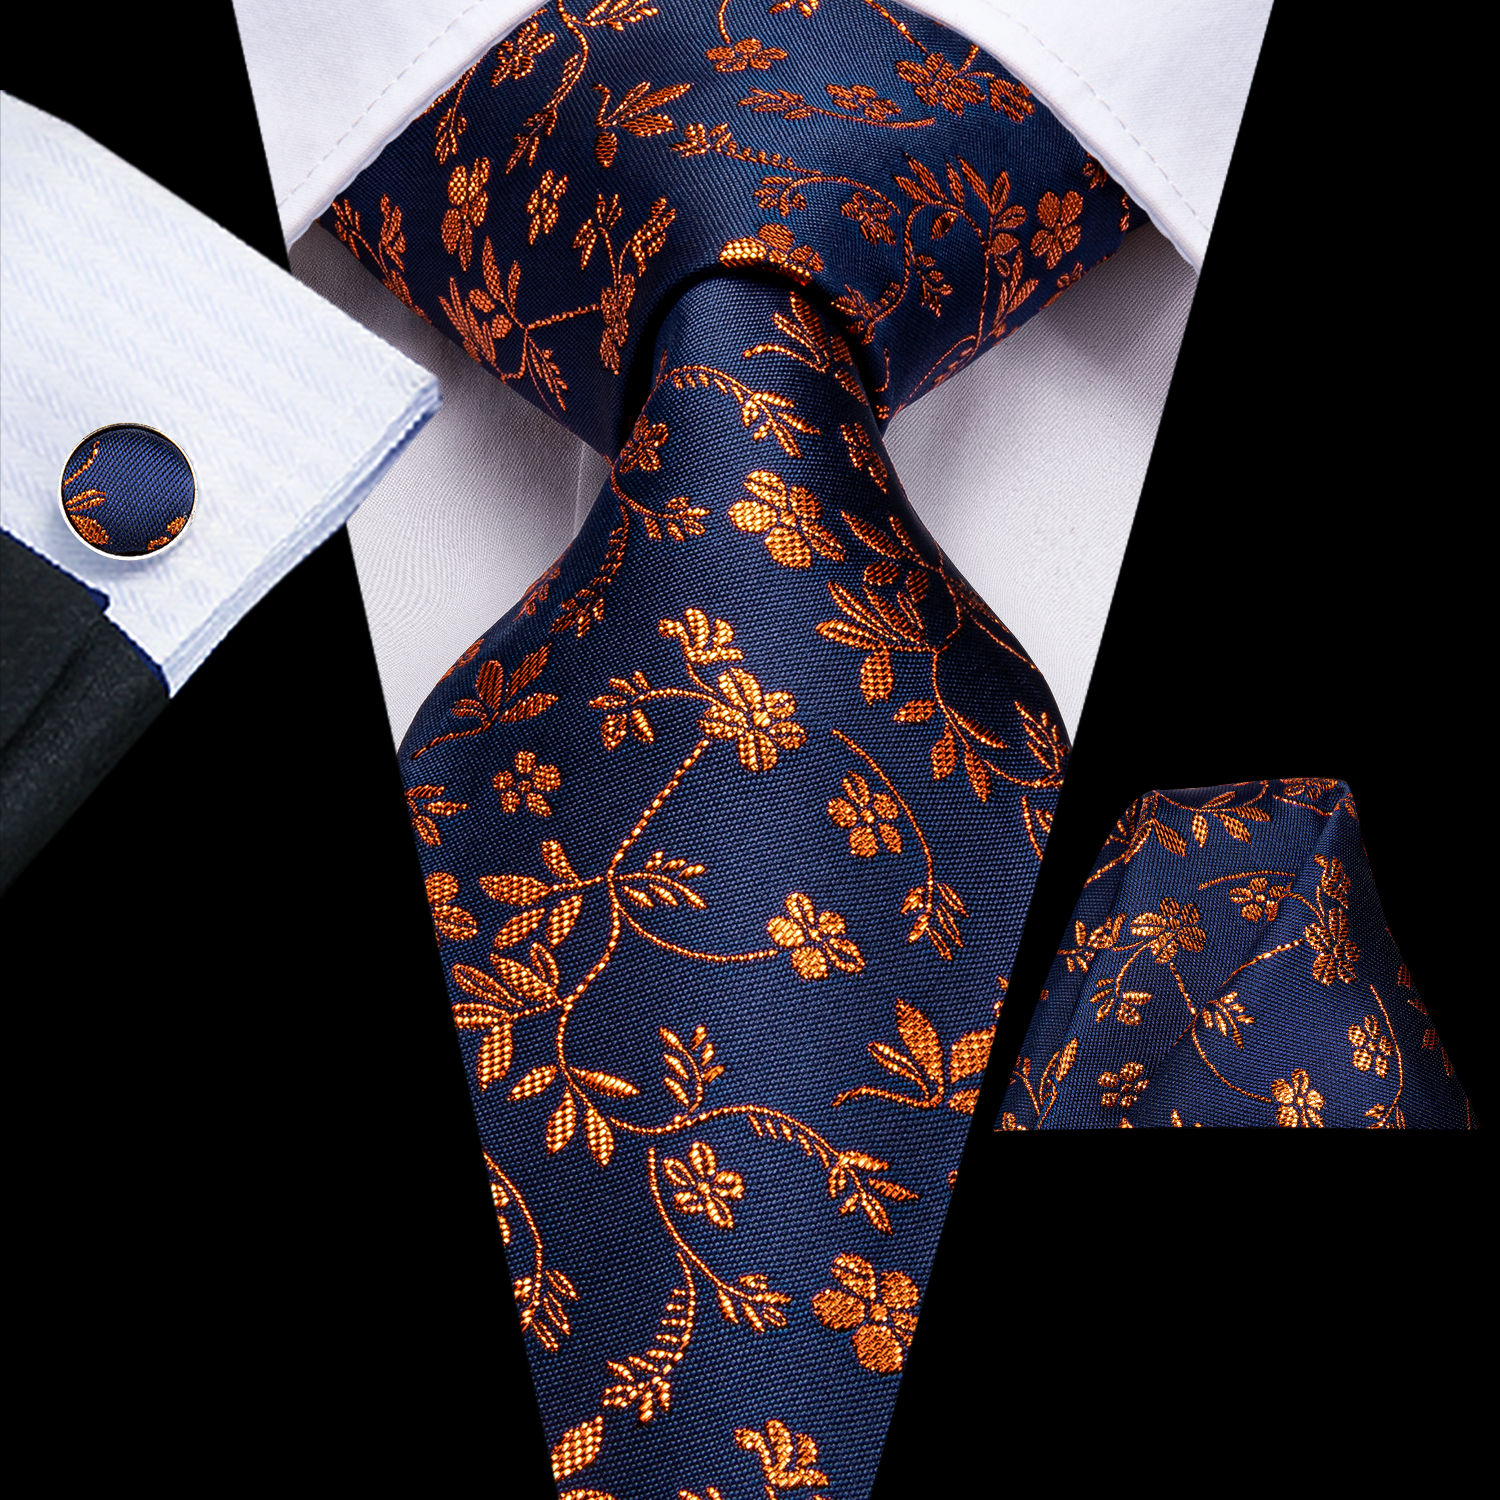 Corbatas, fajines y pañuelos de bolsillo de Hi-Tie Juego corbata y pañuelo de seda tejida con motivos florales para hombre Conjuntos Ropa olivi.com.br